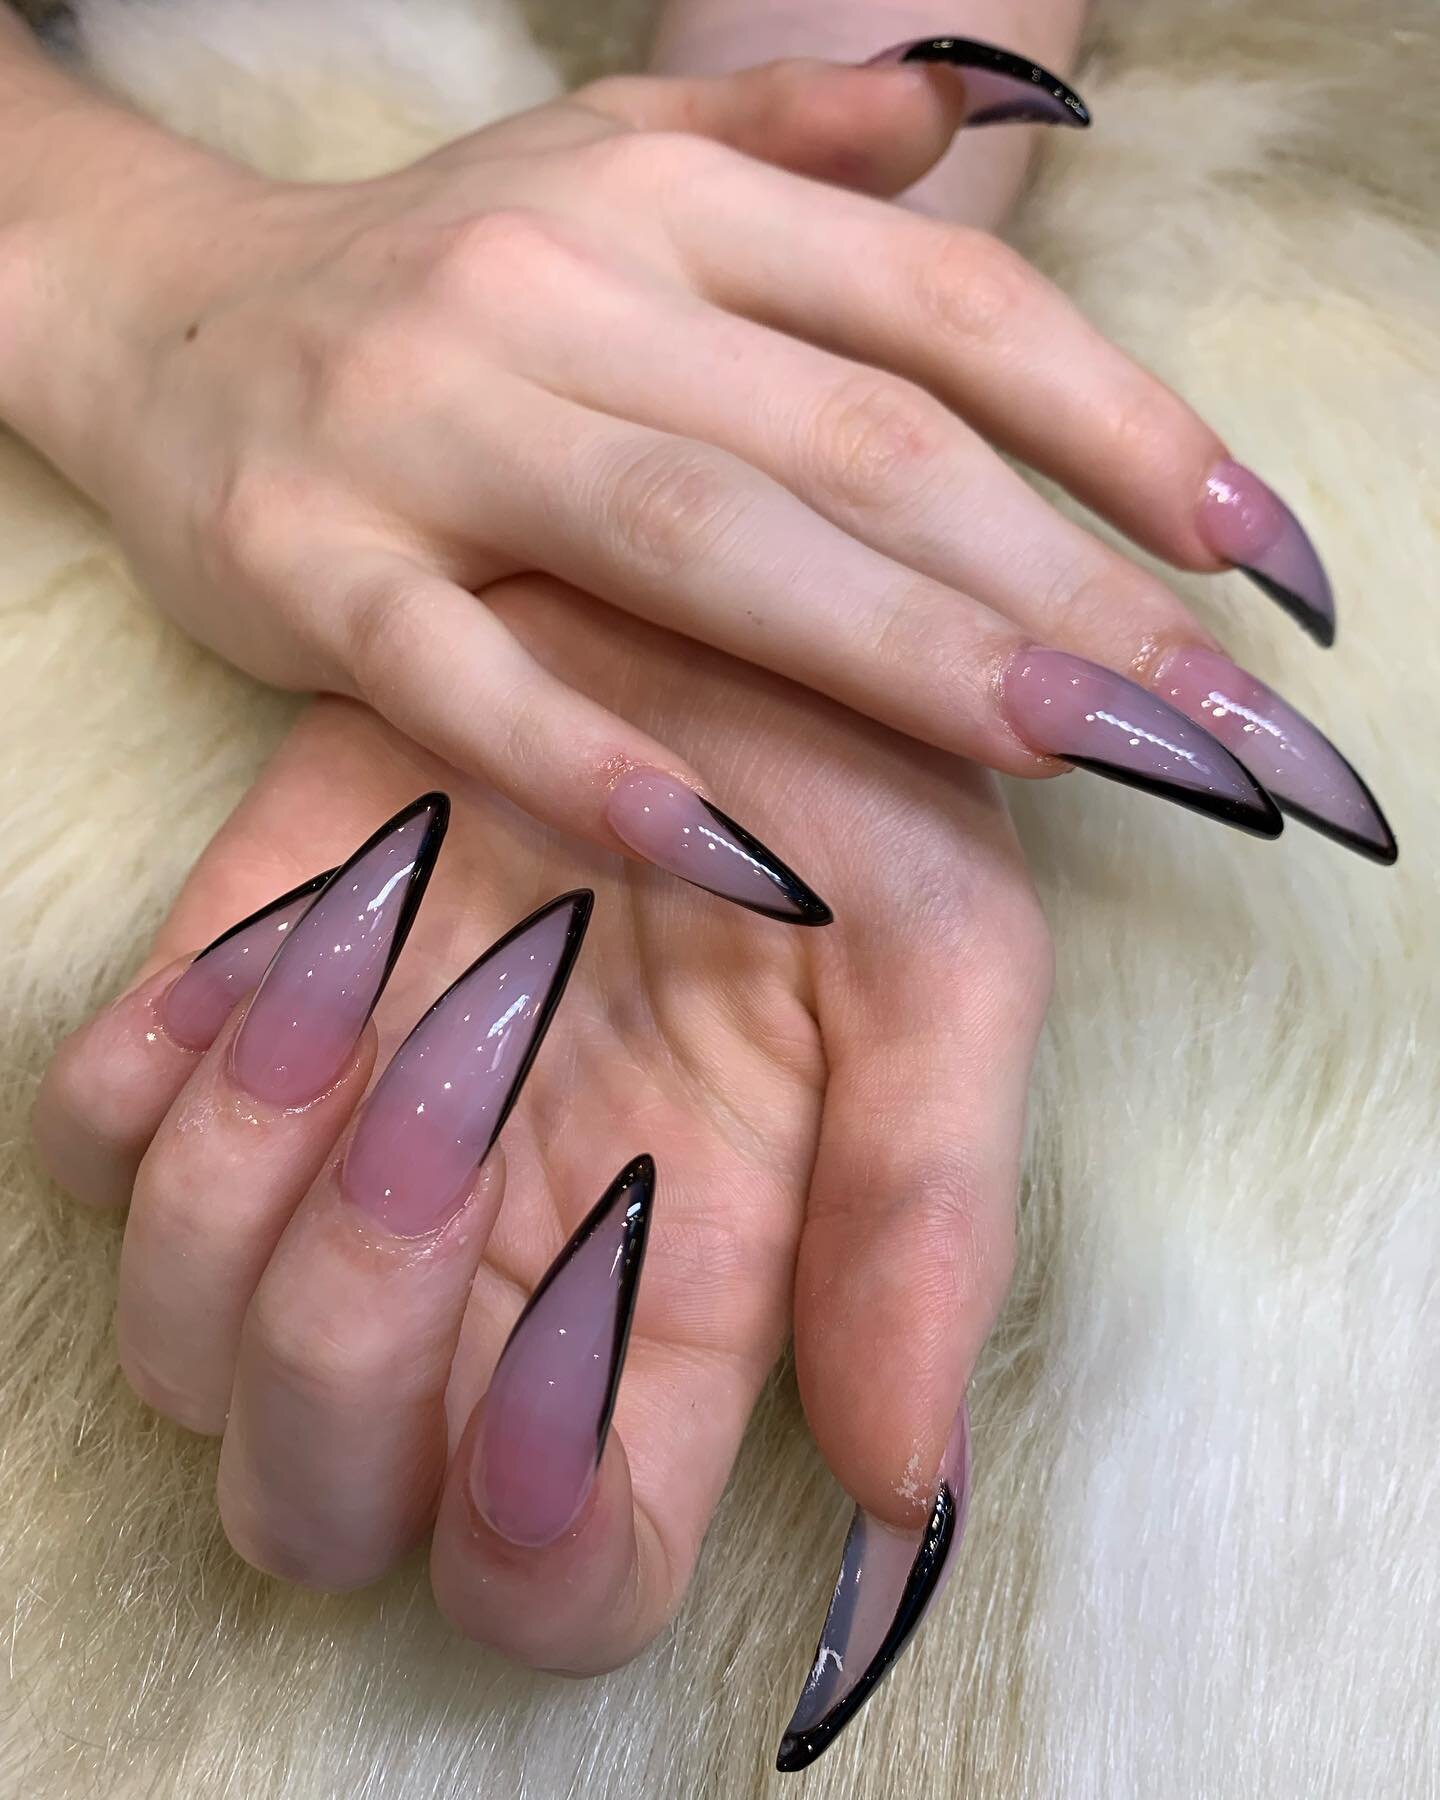 Beautiful nails to start the week off 🤩

#nails #nailart #nailsofinstagram #manicure #nail #beauty #dippingpowdernails #nailsonfleek #nailstagram #nailsoftheday #instanails #nailstyle #nailsart #naildesign  #nailswag #love #naildesigns #nailpolish #